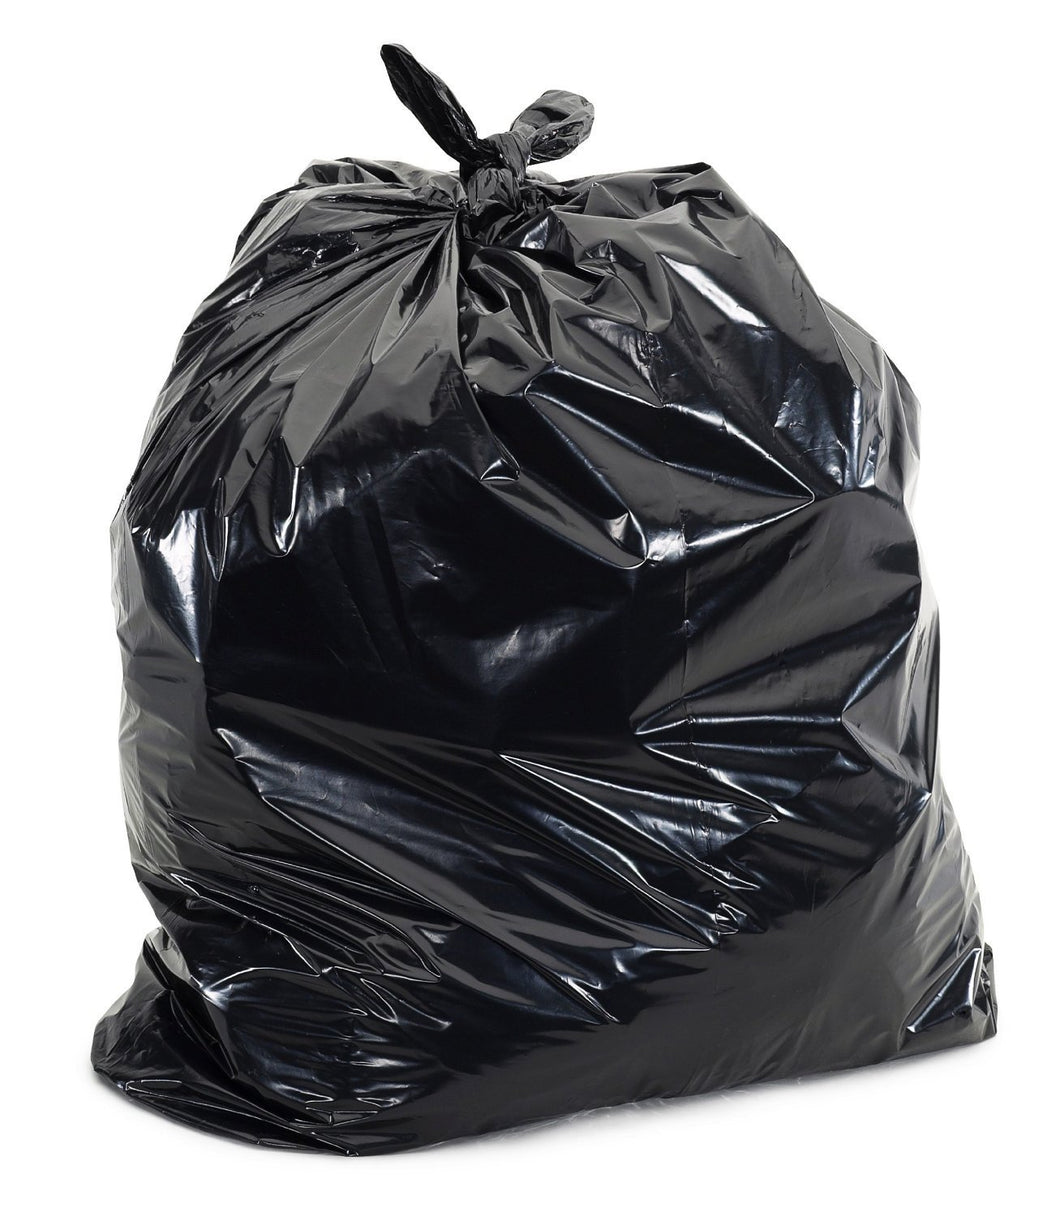 Garbage Bags - Black - 40pk